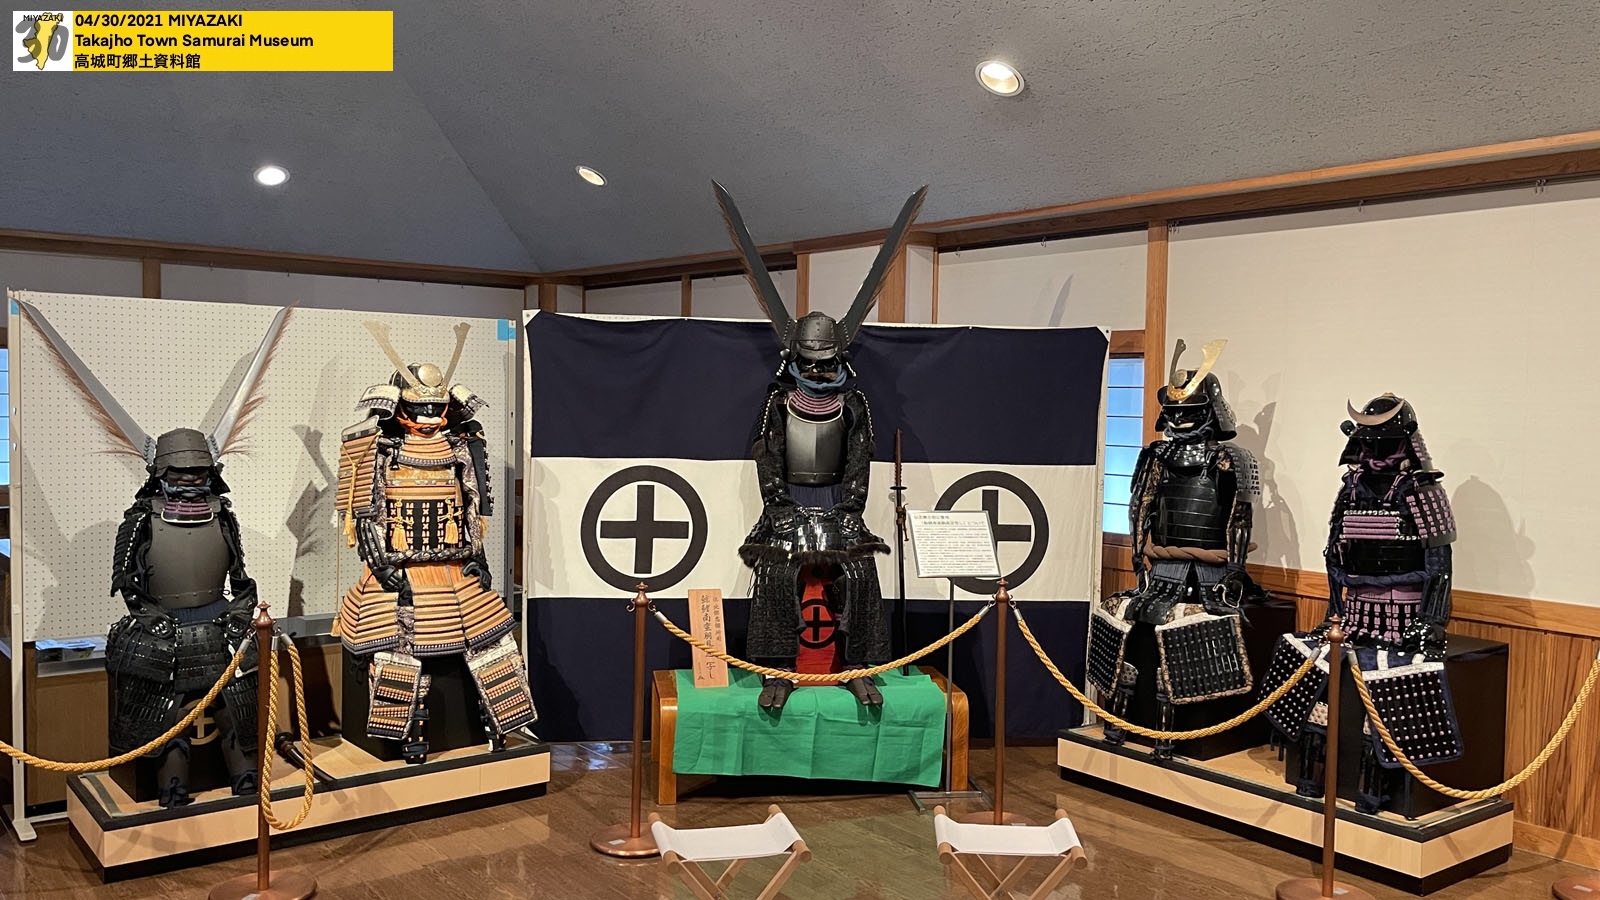 Takajho town Samurai Museum